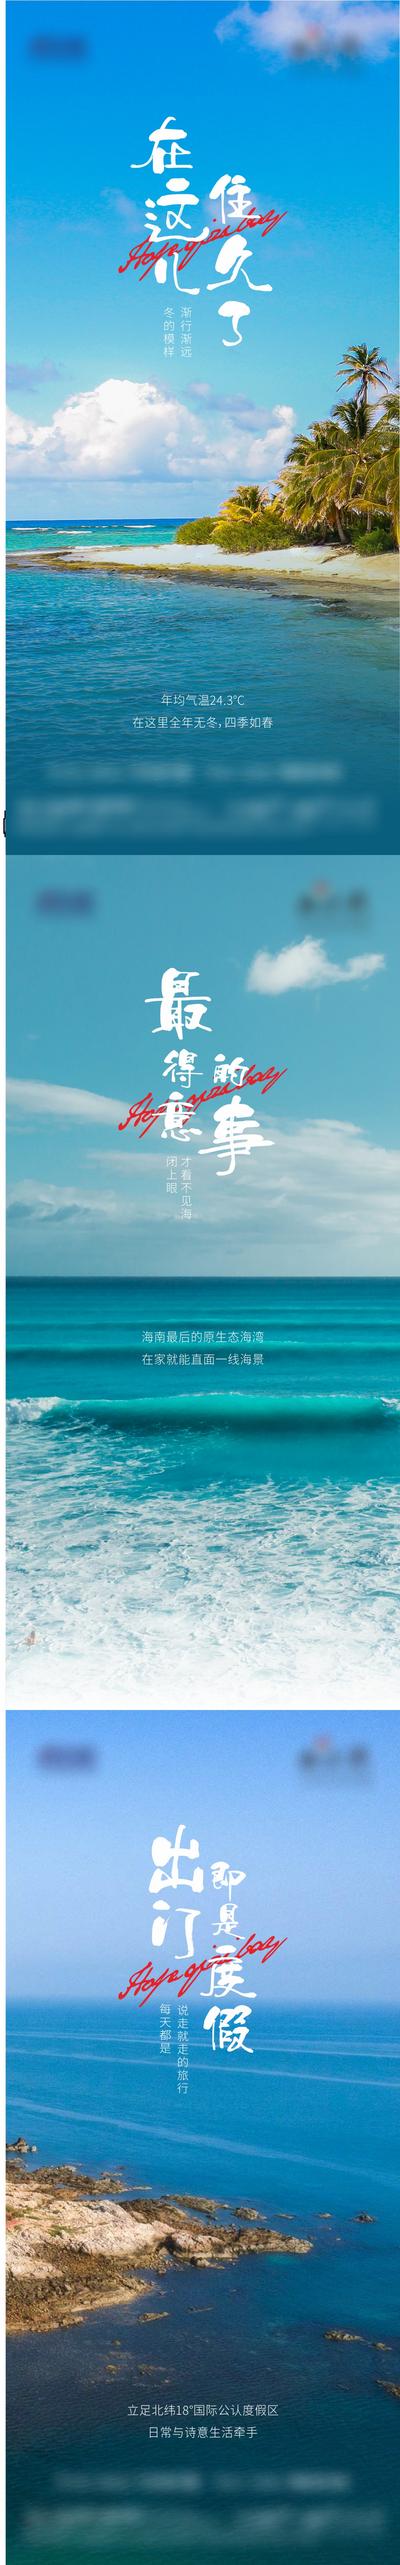 南门网 广告 海报 地产 文旅 系列 价值点 沙滩 海洋 大海 海景房 系列